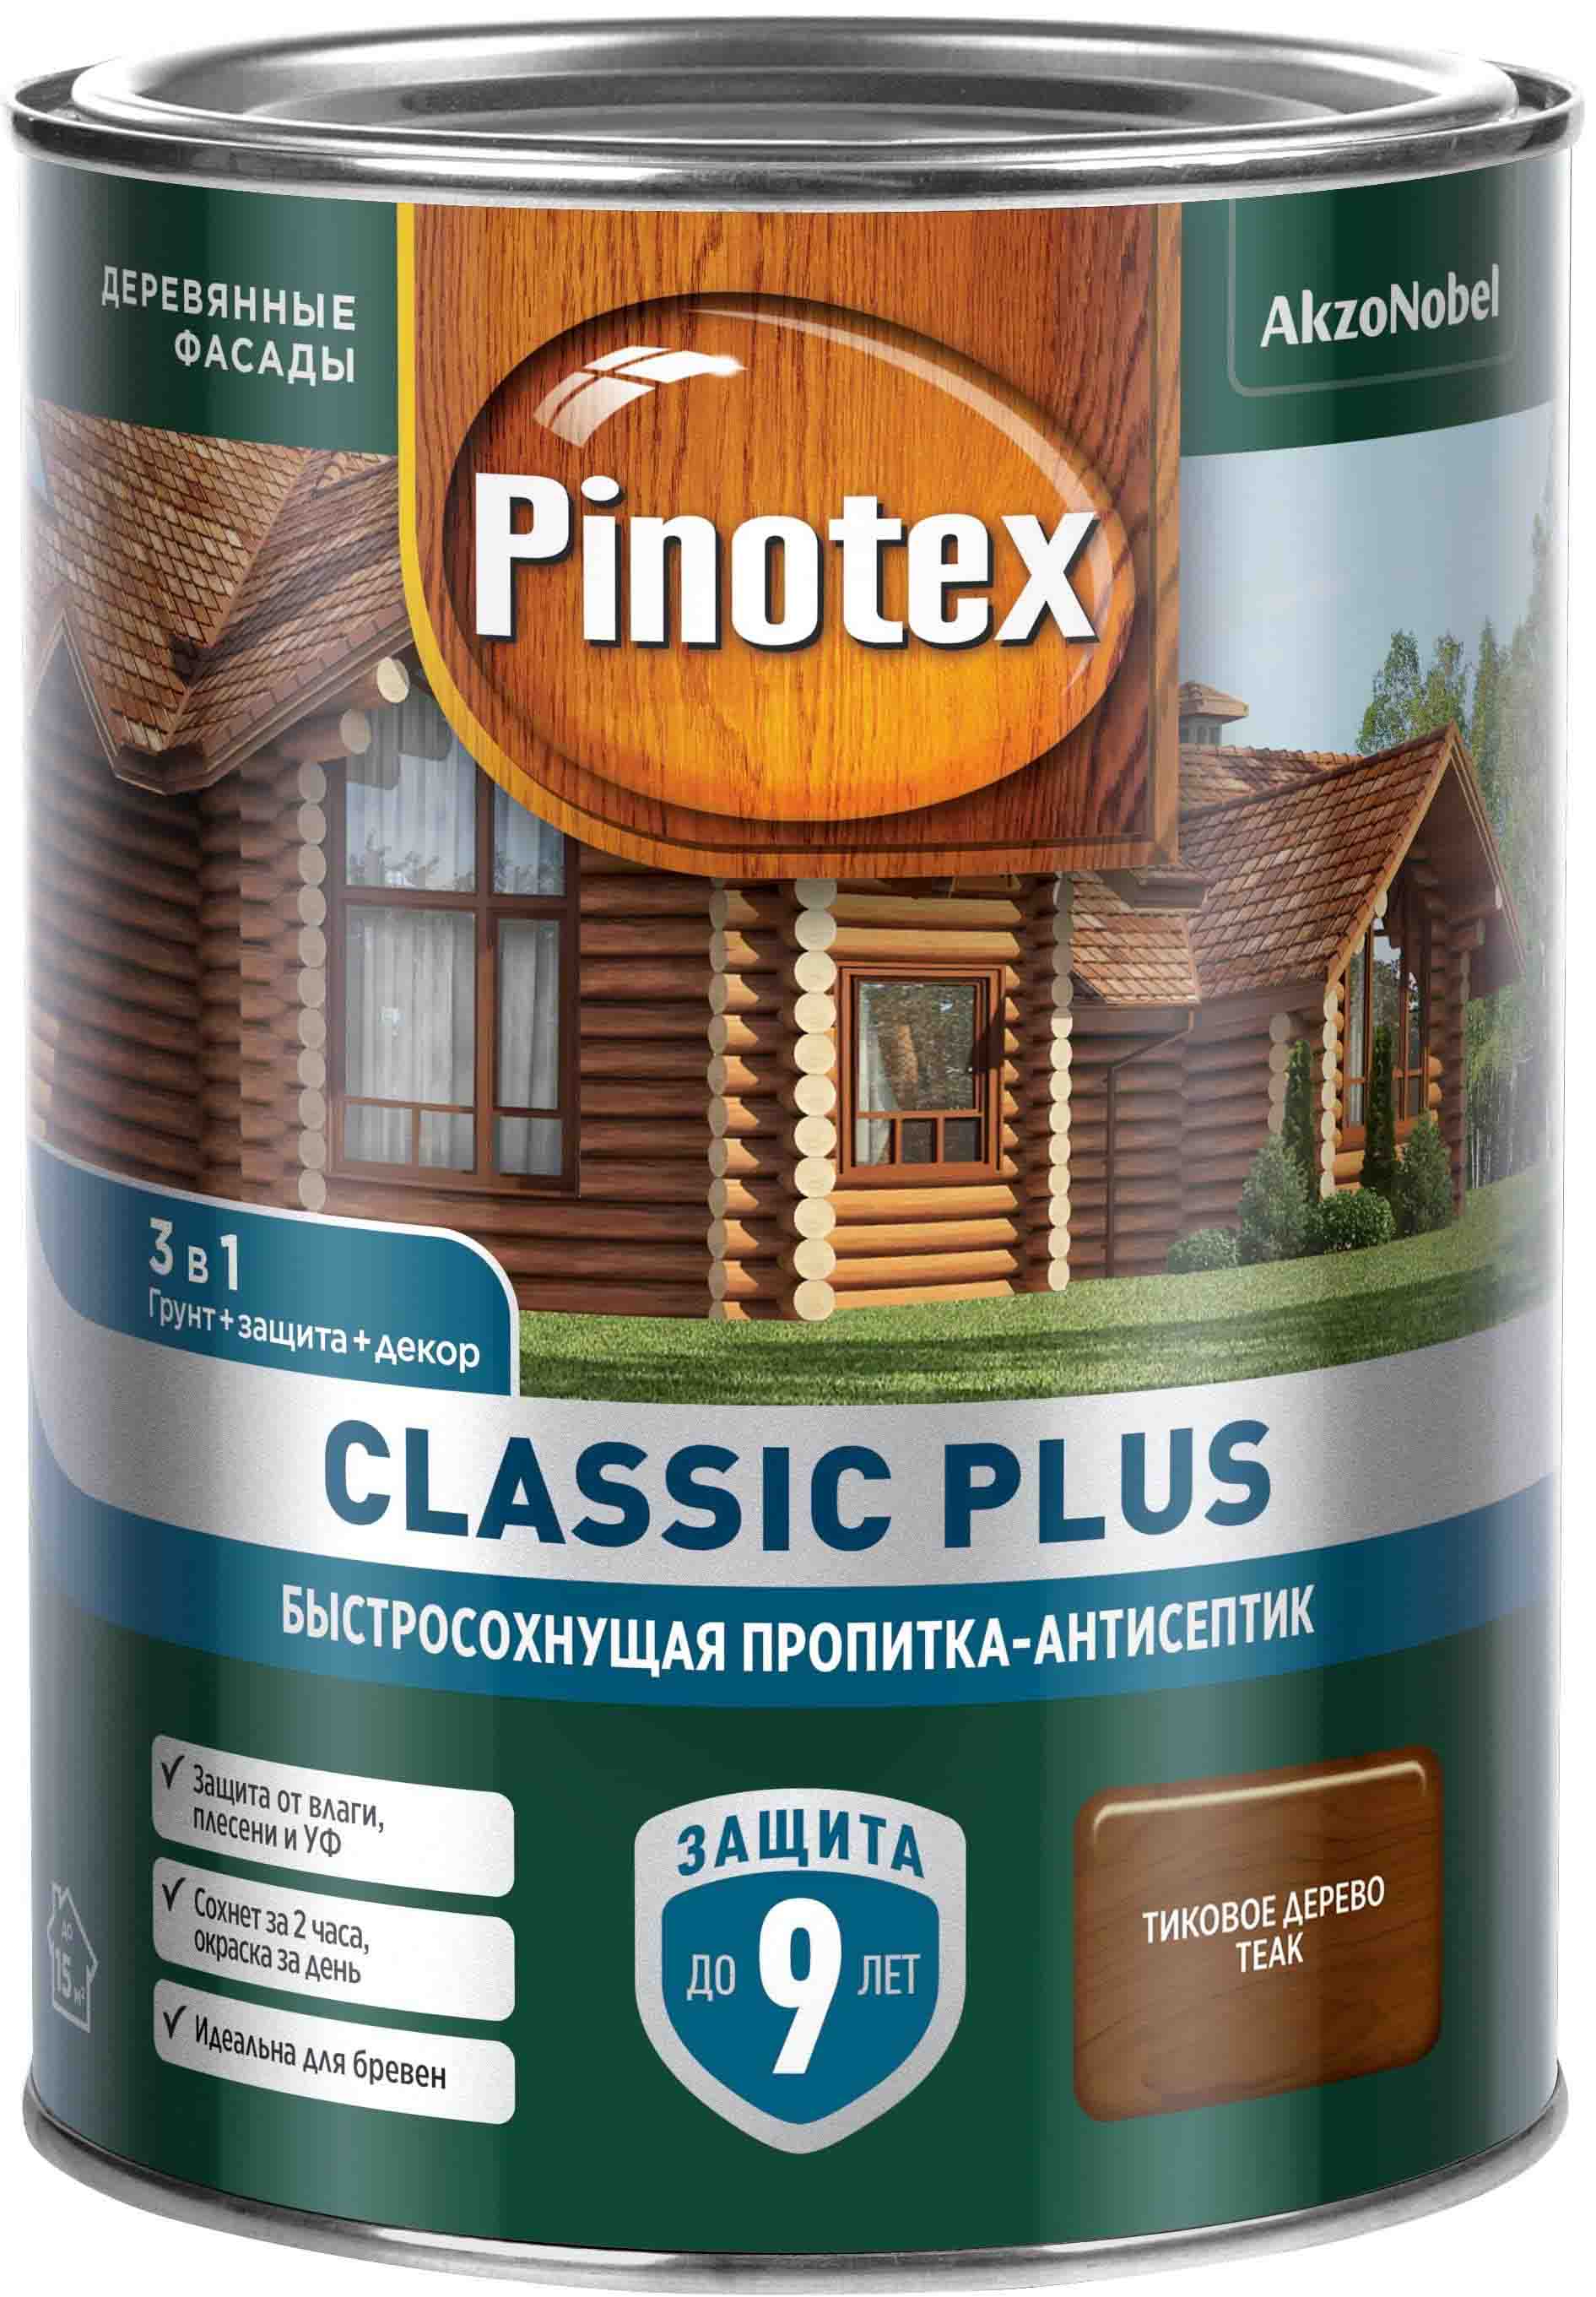 PINOTEX Classic Plus декоративная пропитка по дереву быстросохнующая тиковое дерево (0,9л)